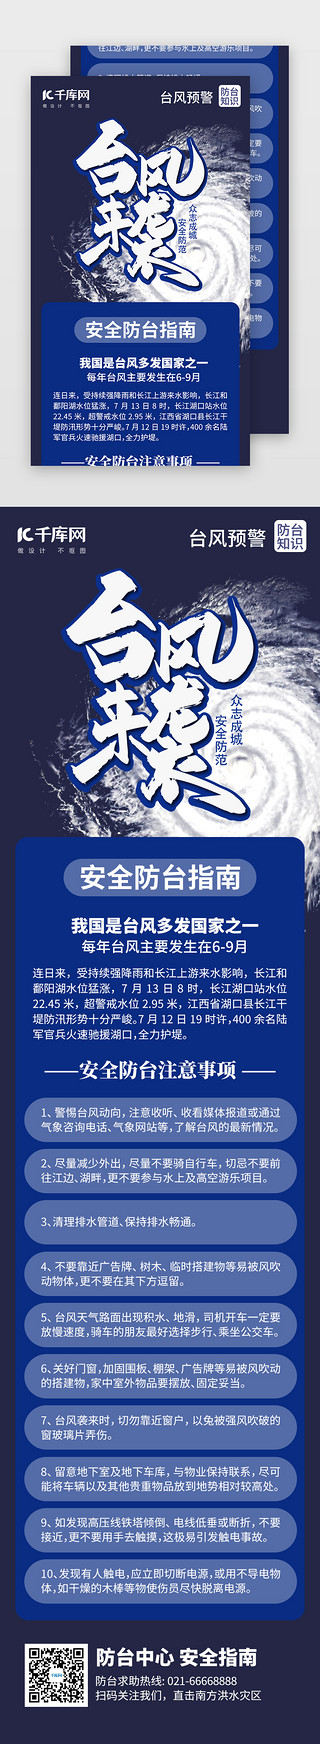 天气预报图UI设计素材_台风预警安全指南H5